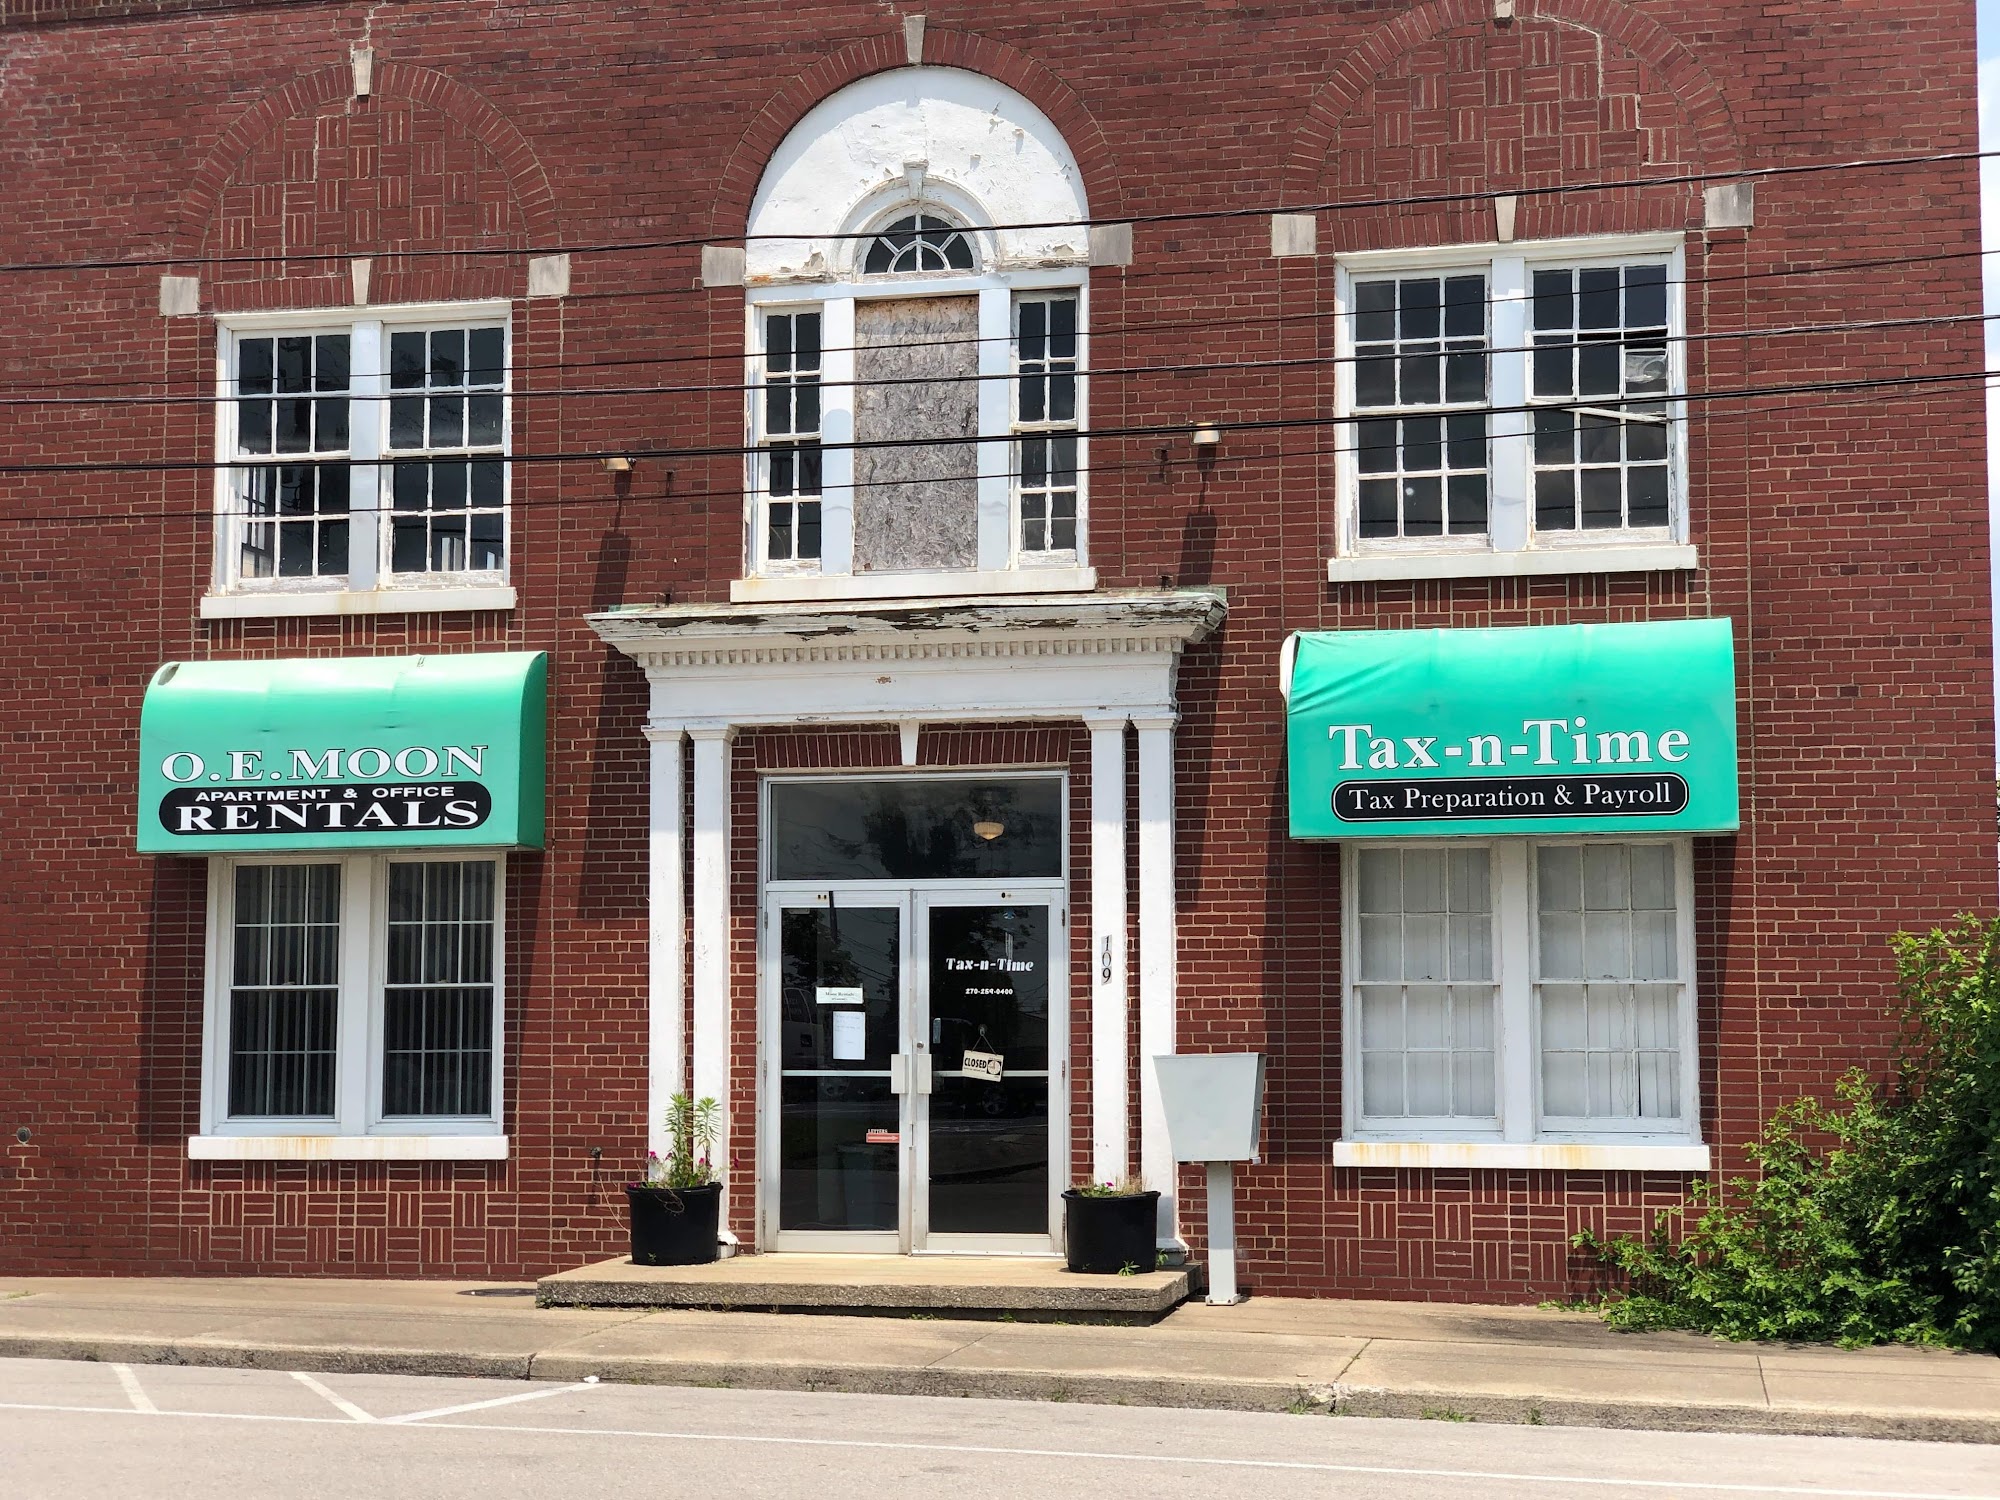 Tax-n-Time Tax Preparation & Payroll 109 E Main St, Leitchfield Kentucky 42754